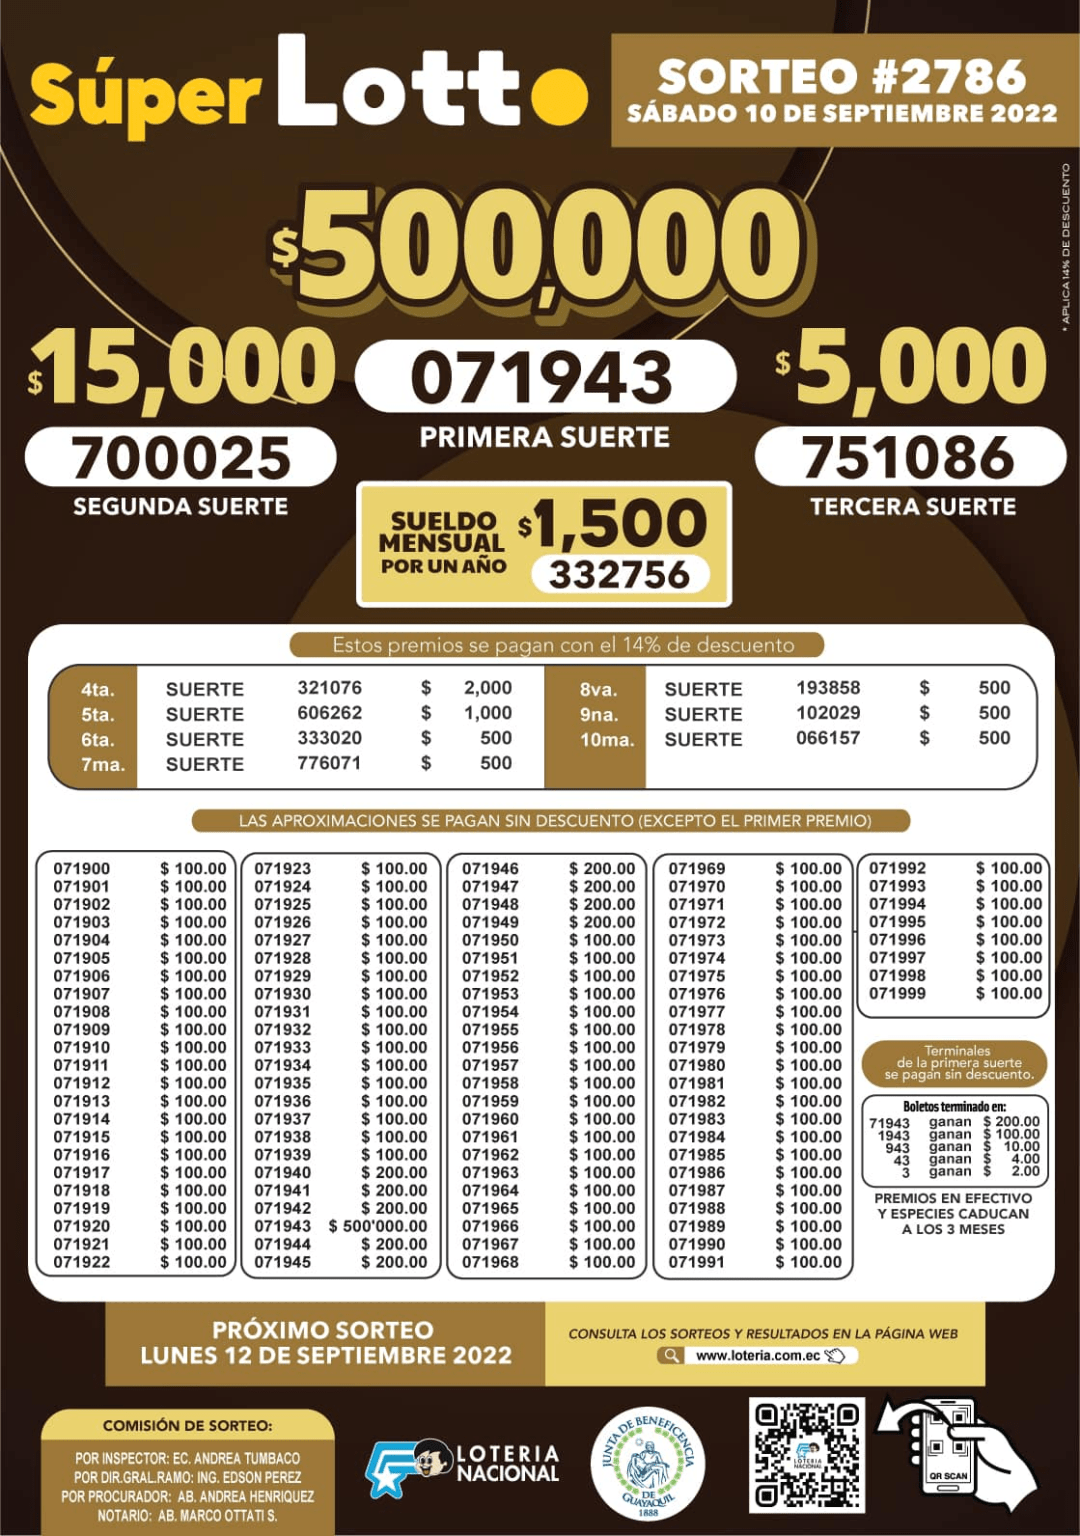 Resultados Y Boletín Super Lotto Sorteo 2786 Consulta Los Boletos Ganadores De La Noche Y